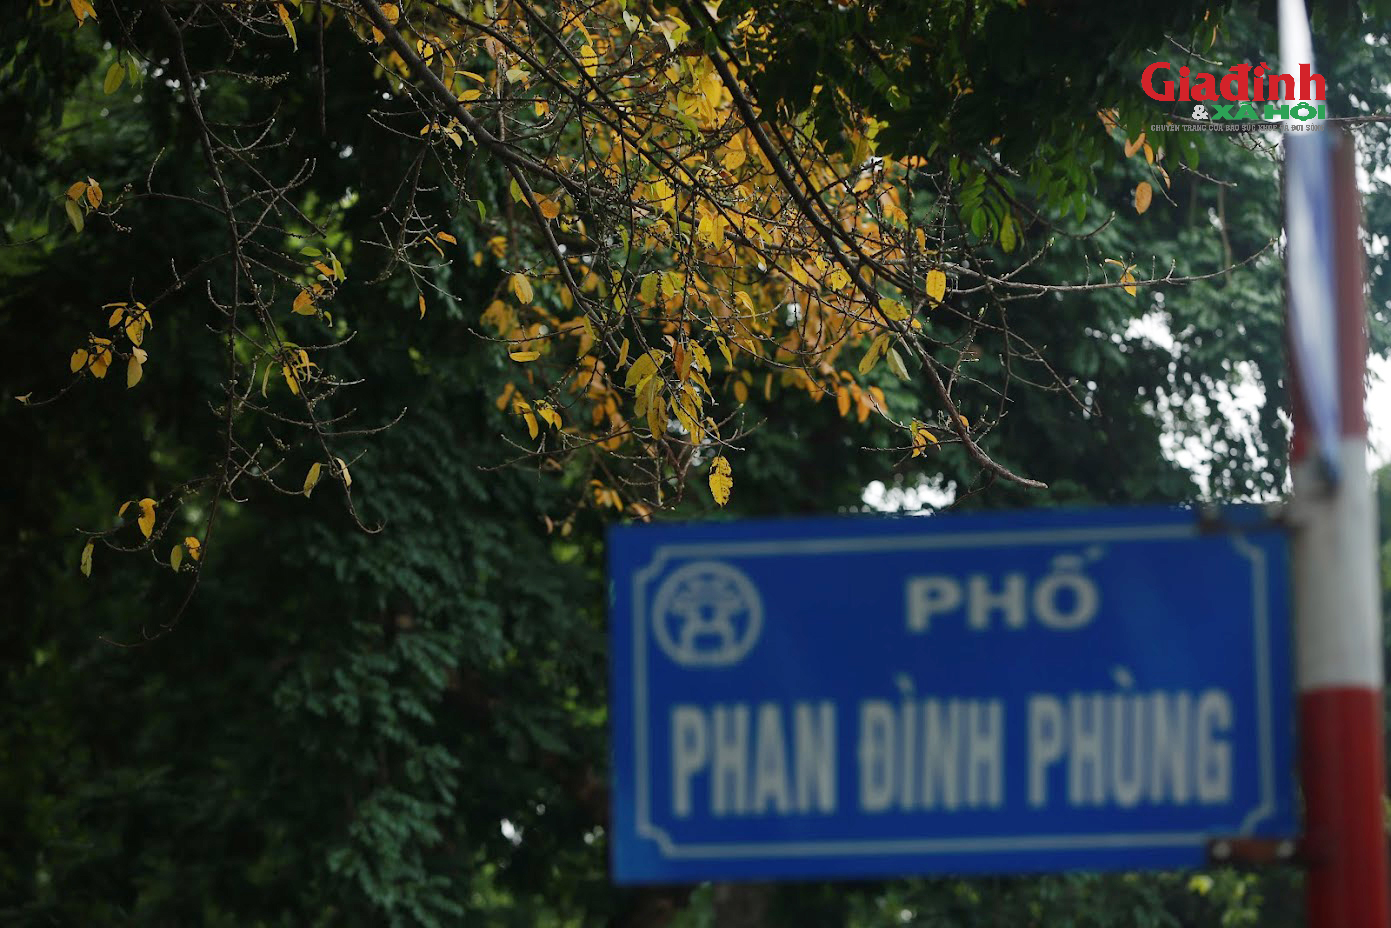 Cây thay lá giữa Xuân Hà Nội, giới trẻ thi nhau 'check-in' trên phố dải đầy lá vàng - Ảnh 3.